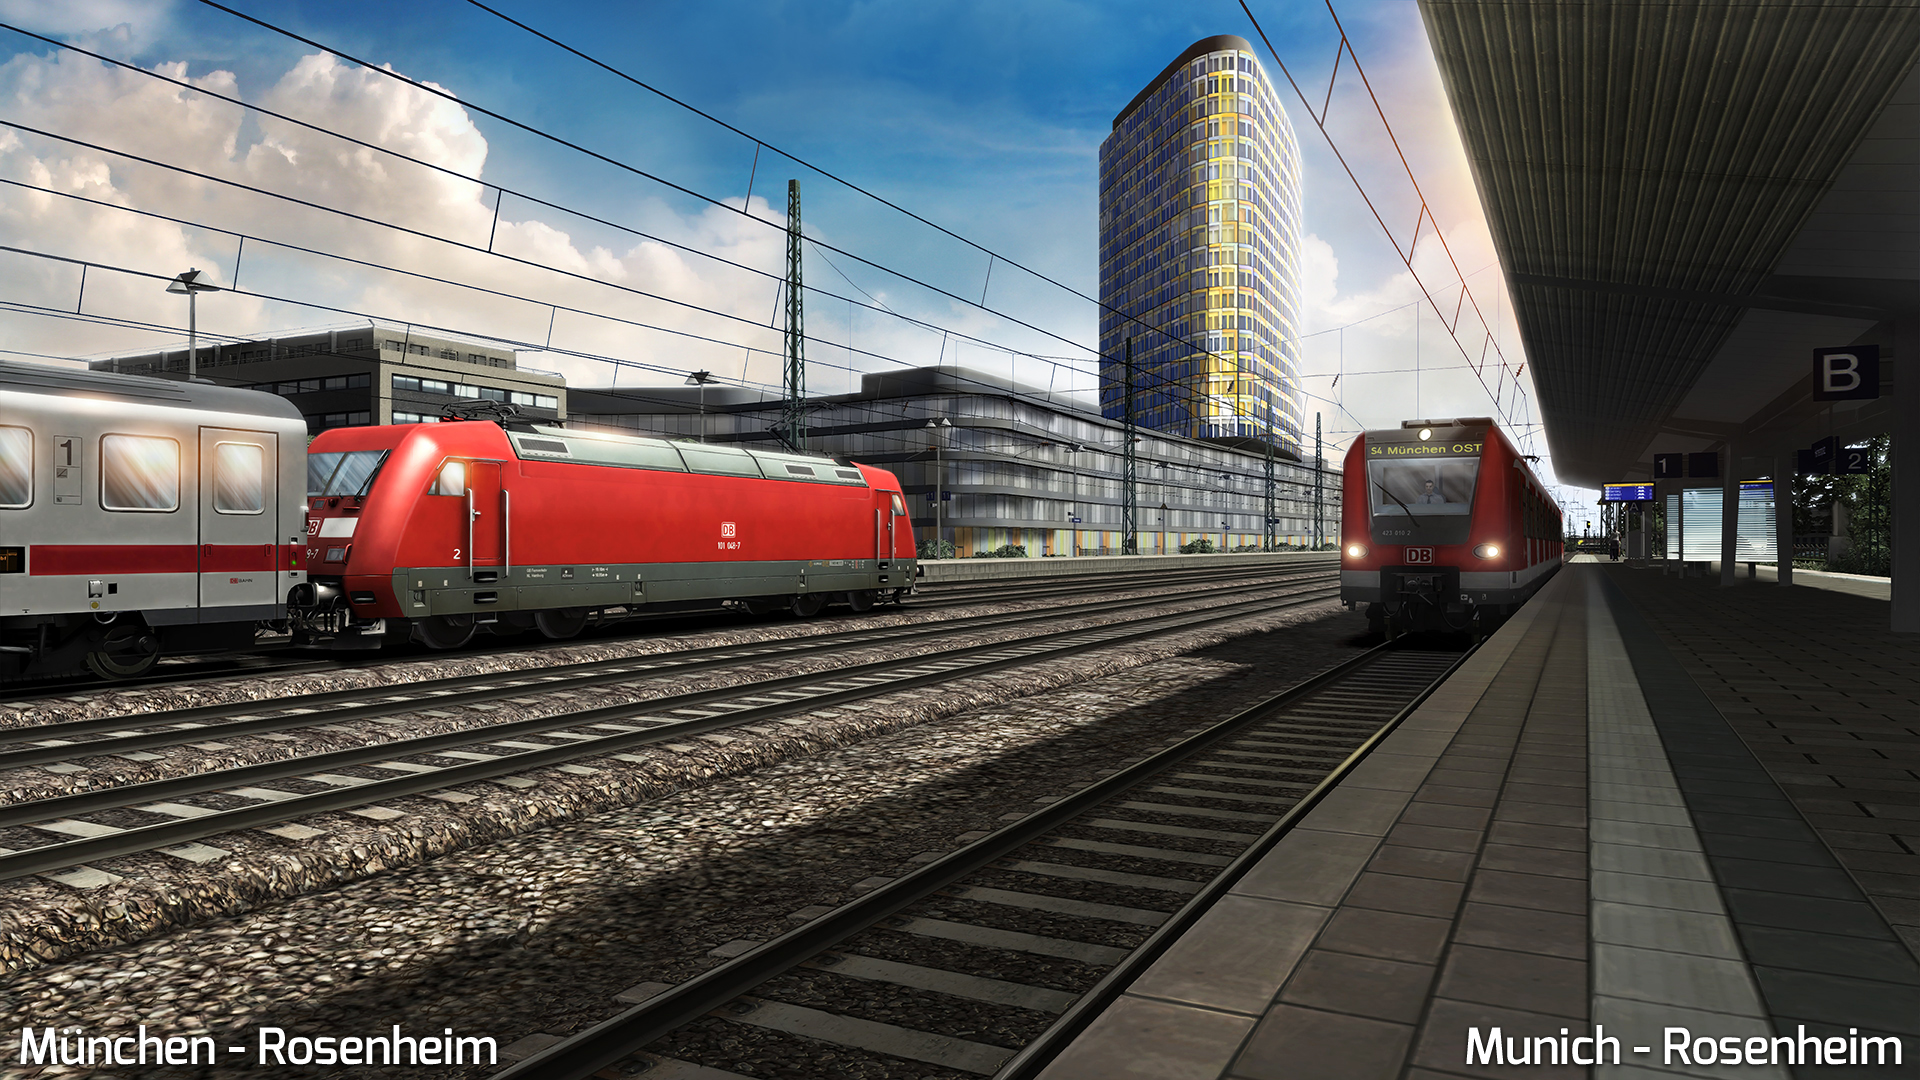 Train Simulator: Munich - Rosenheim Route Add-On Featured Screenshot #1